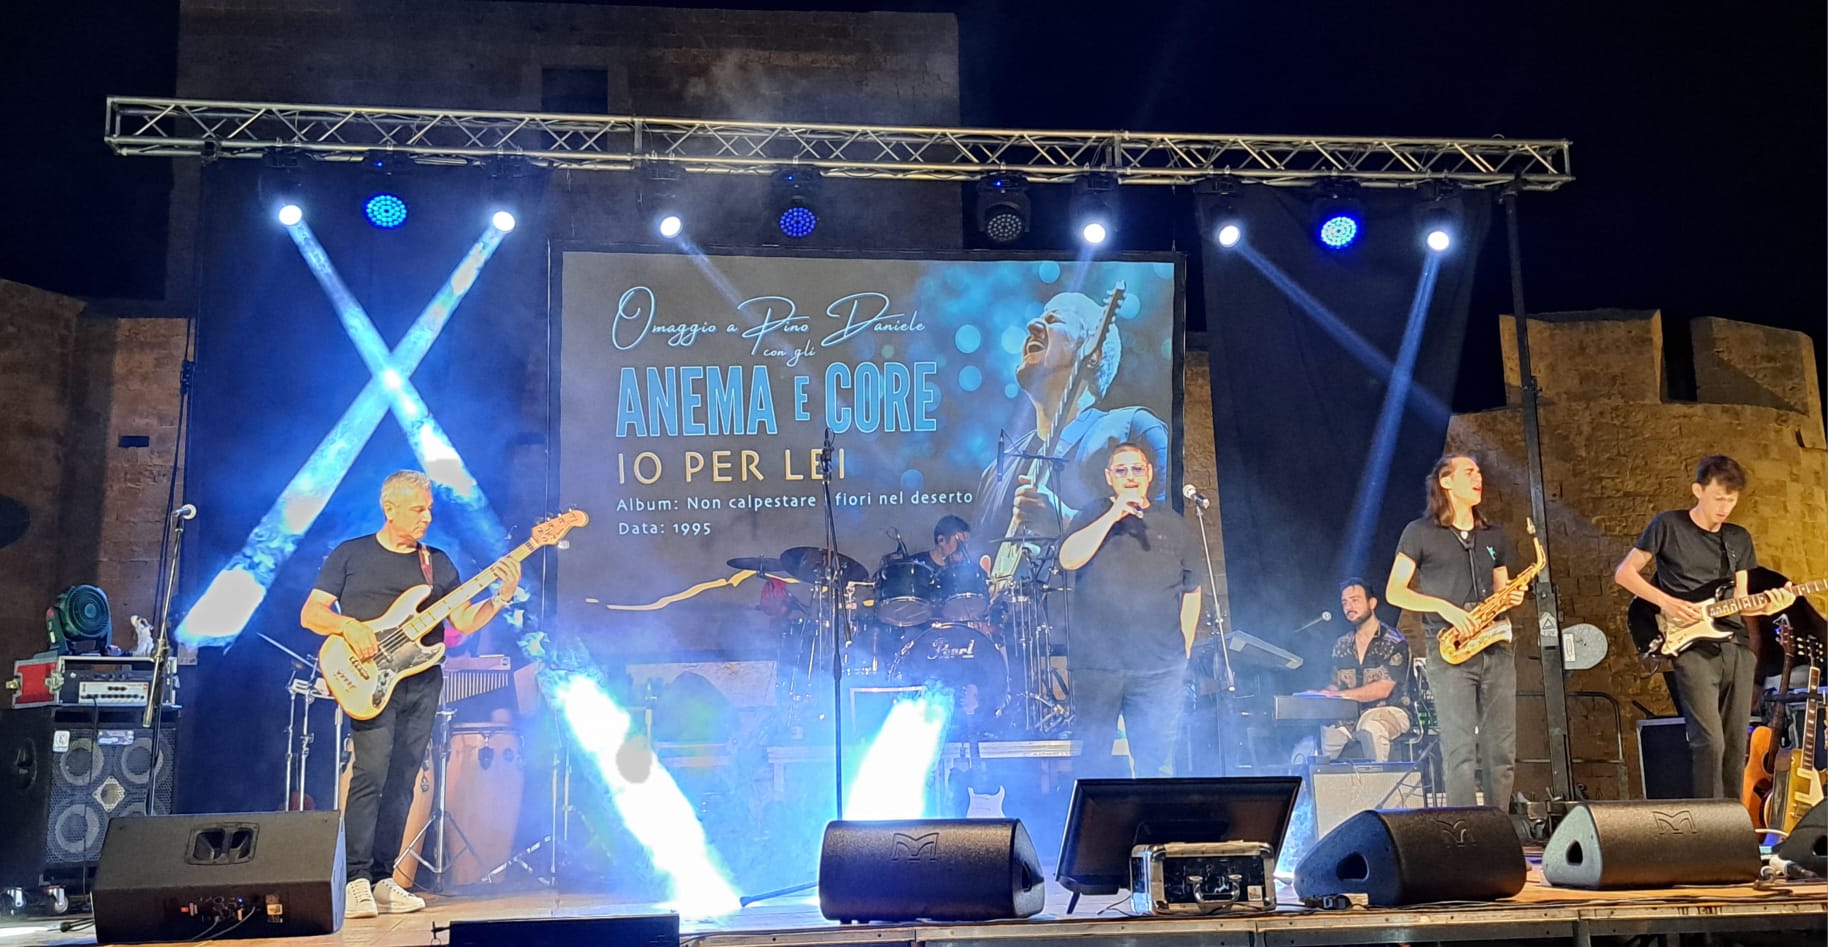 “Anema e Core: Omaggio a Pino Daniele”, lo spettacolo “vincente” di questa calda estate siciliana – I DETTAGLI